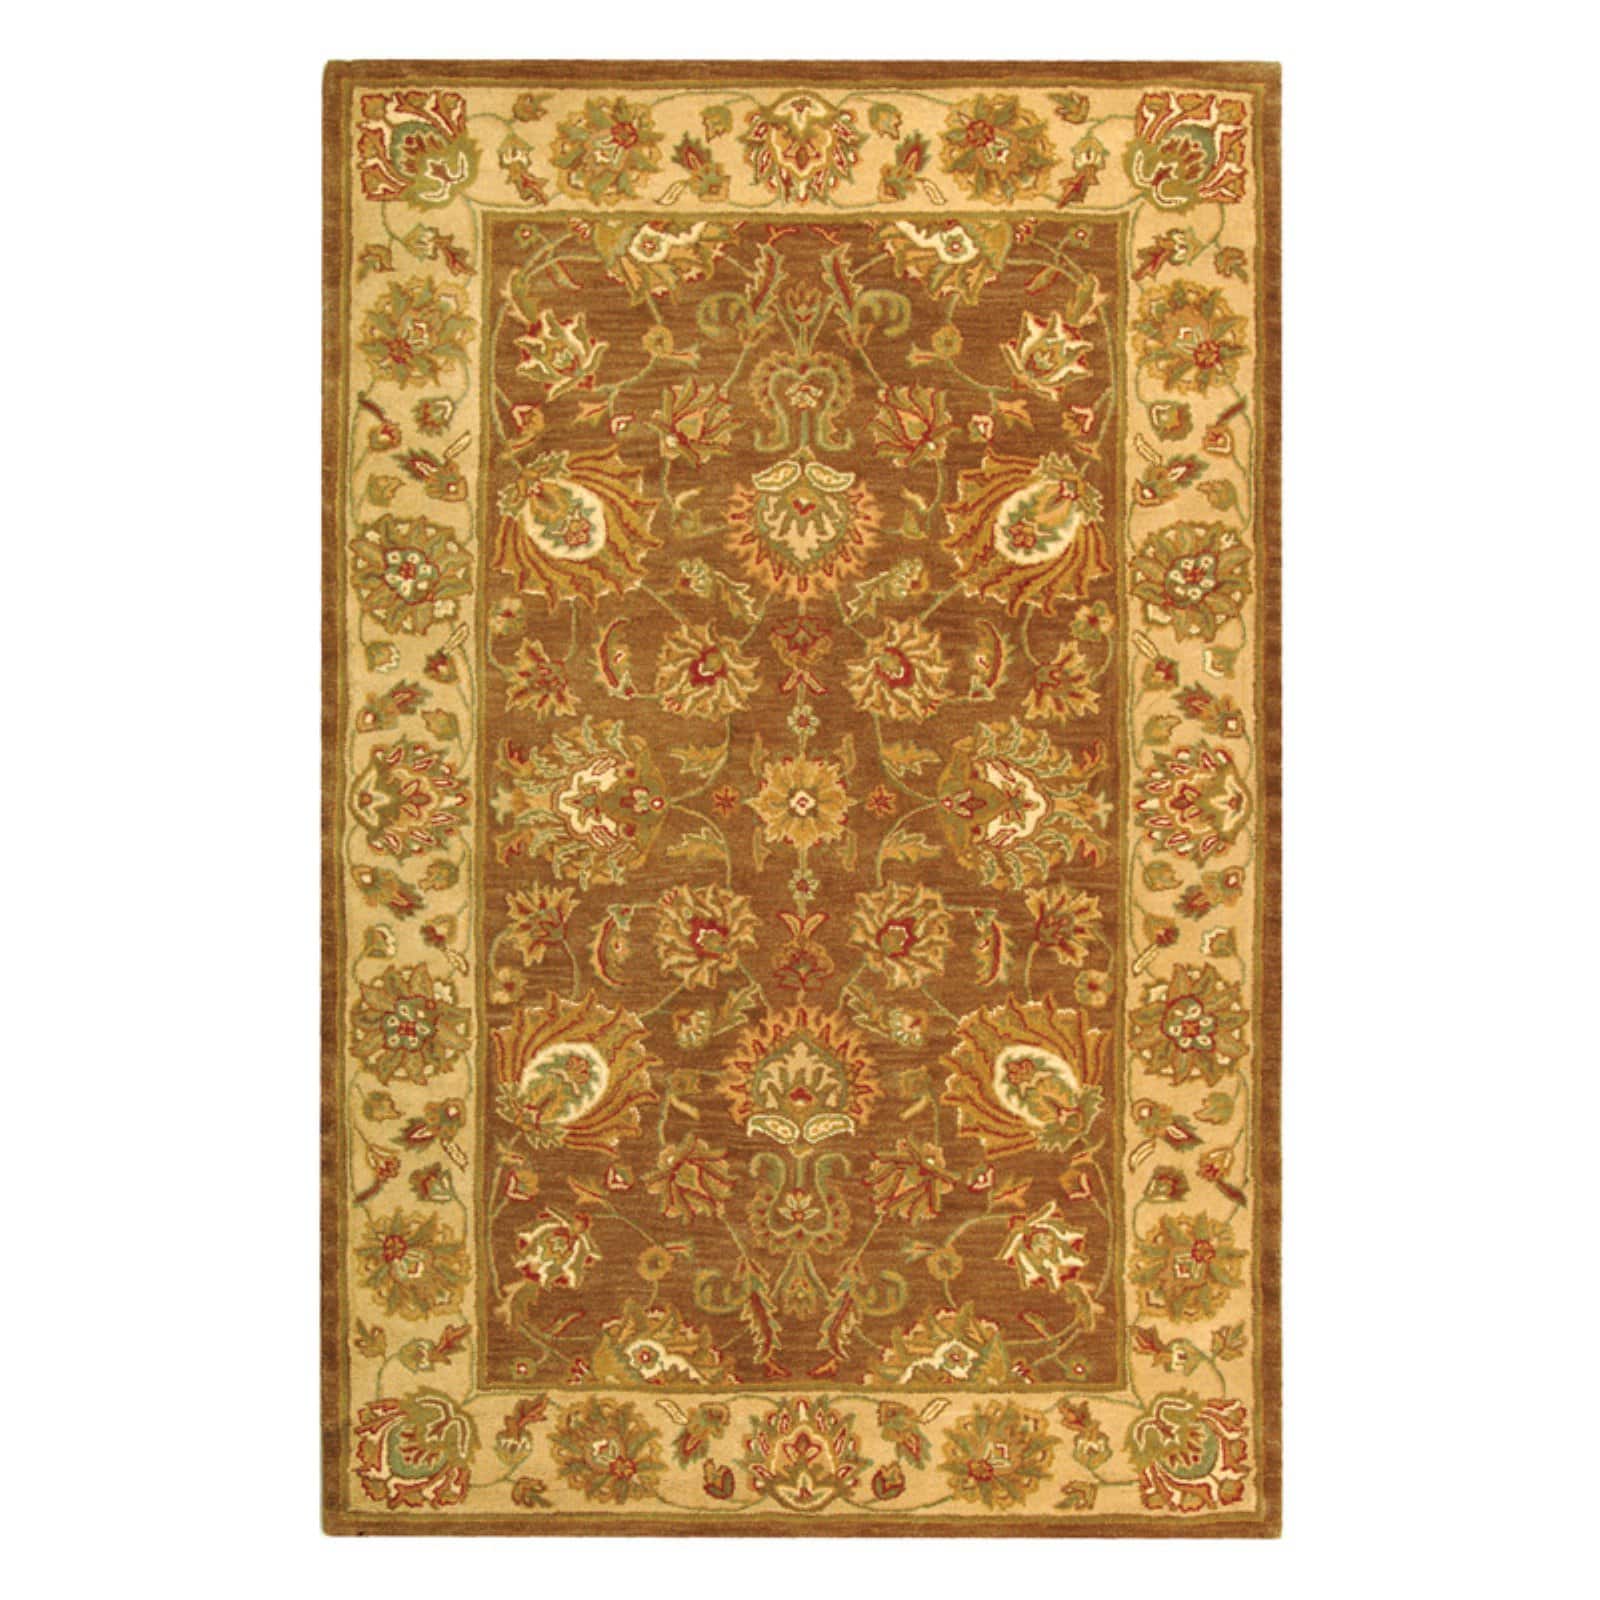 SAFAVIEH Heritage Regis Traditional Wool Runner Rug, Brown/Ivory, 2'3" x 10' - image 4 of 9